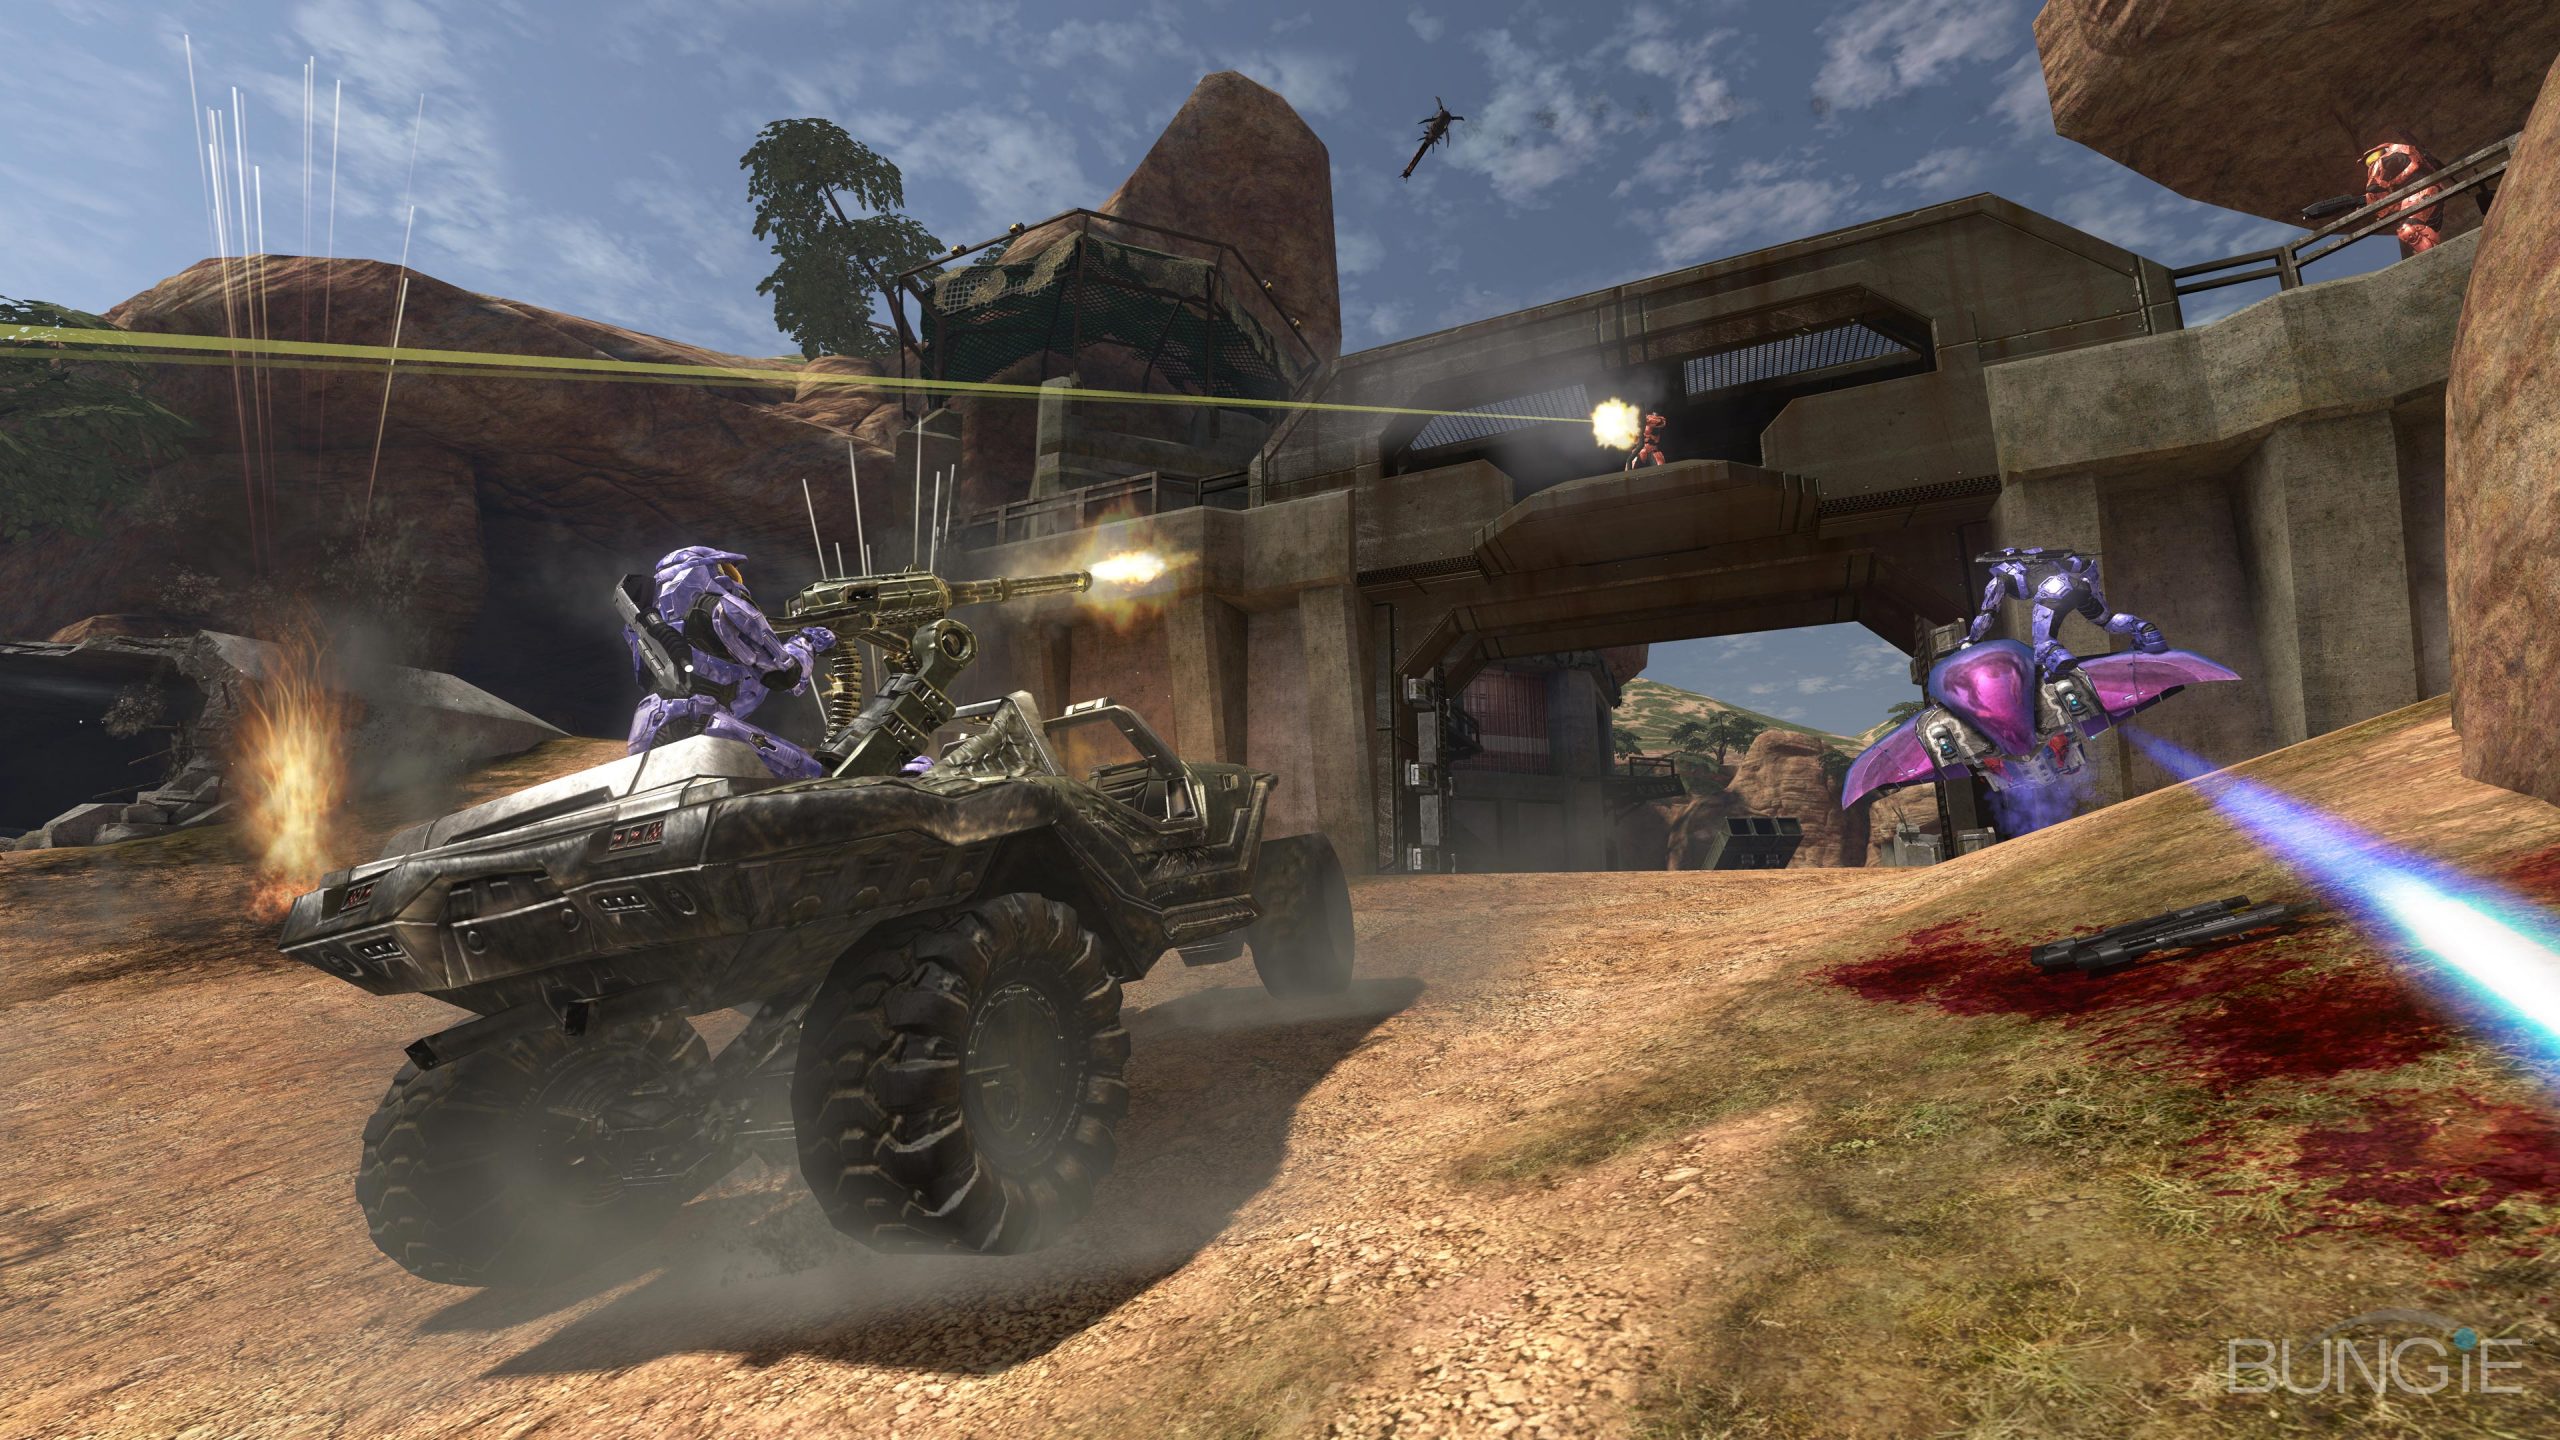 بازی Halo 3 برای XBOX 360